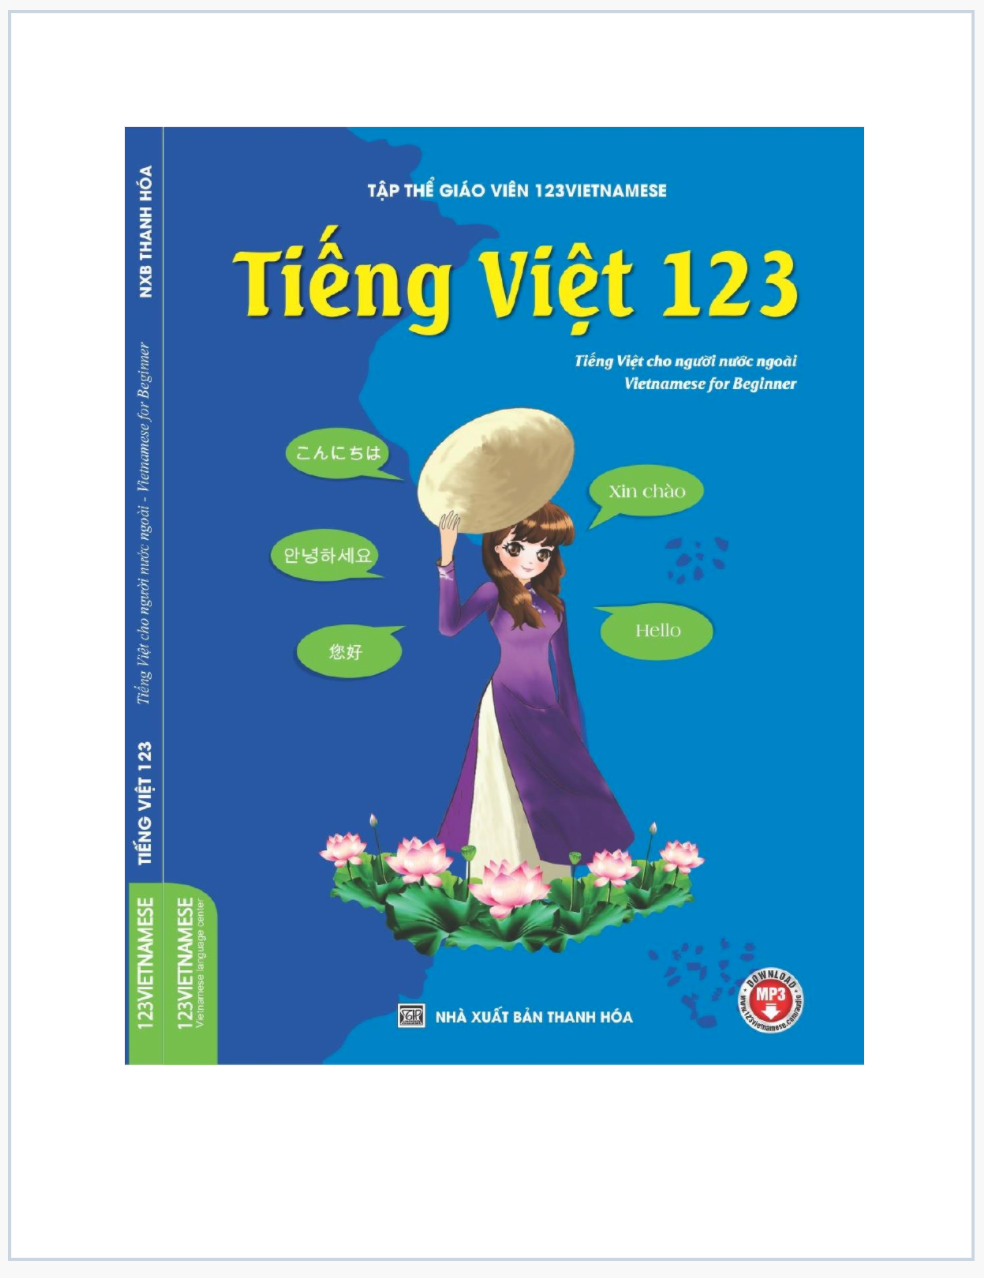 Giáo trình dạy tiếng Việt cho người nước ngoài